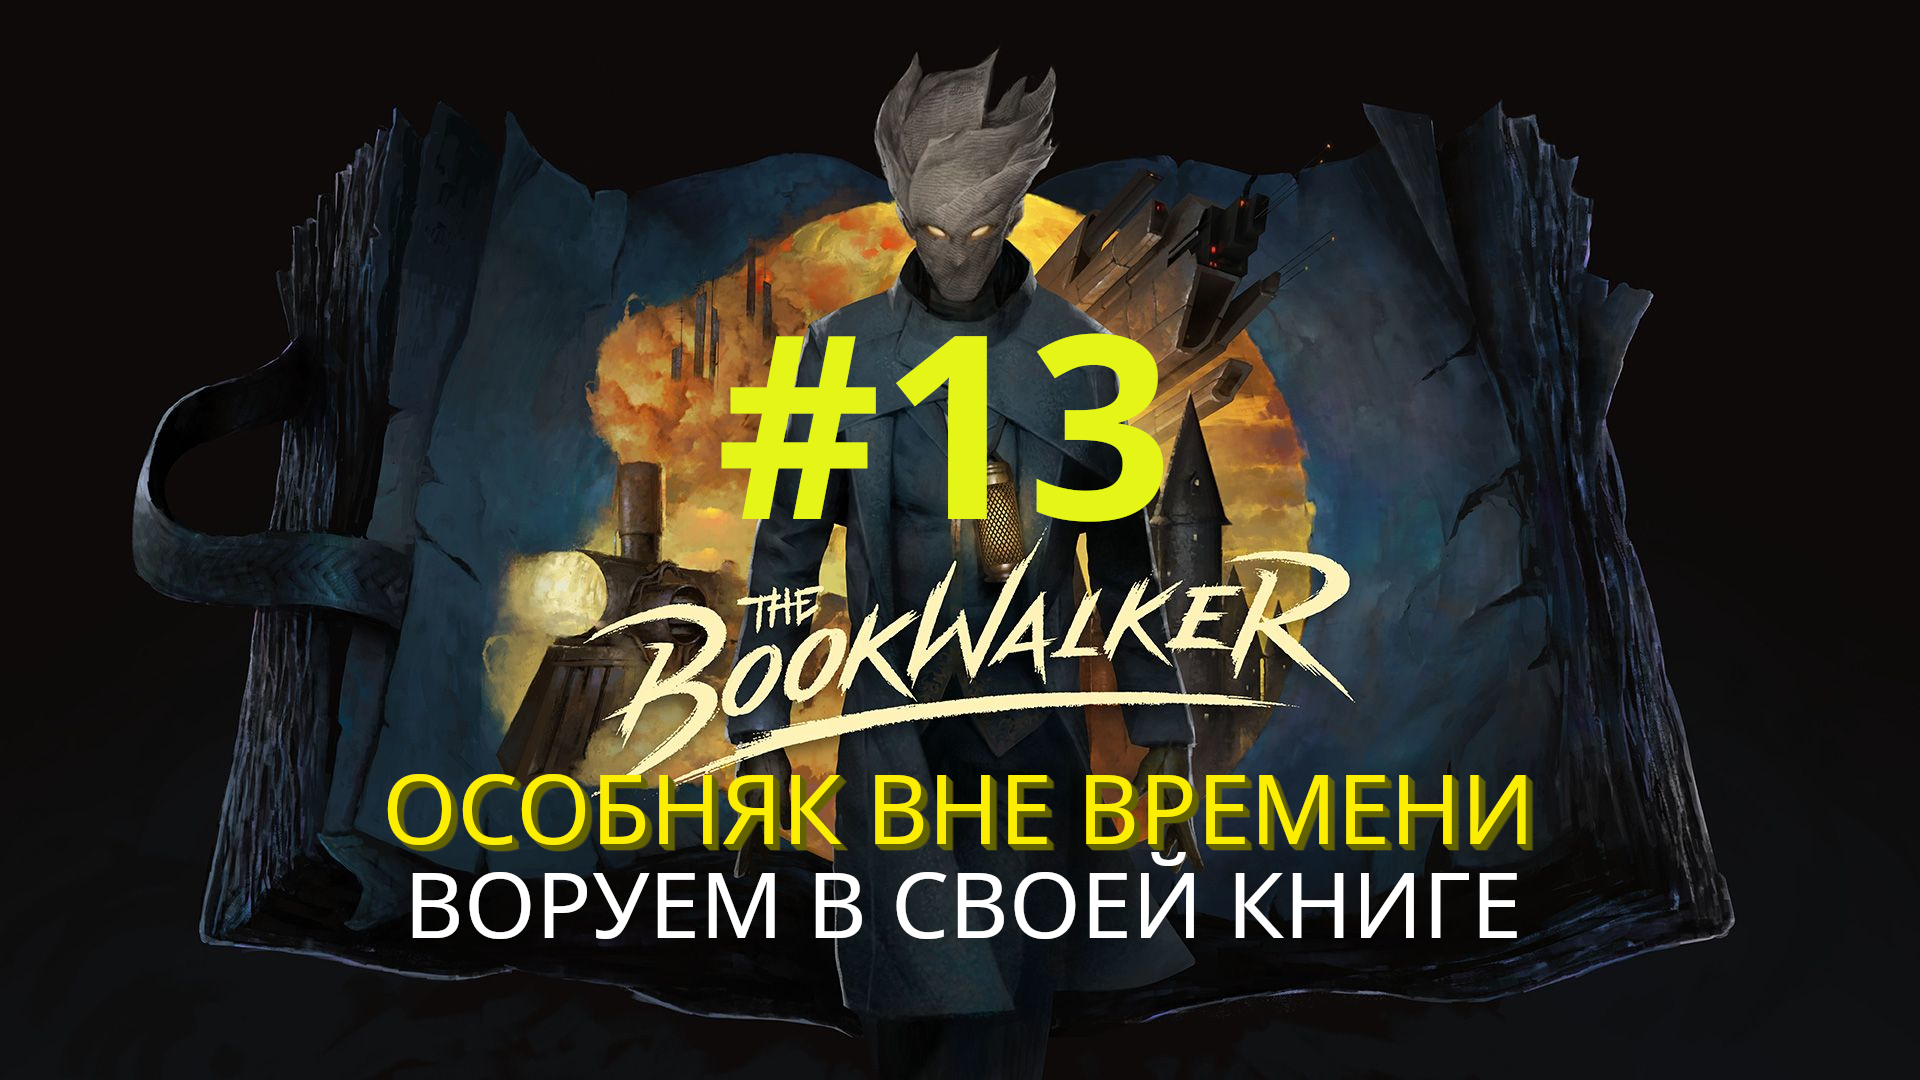 The Bookwalker: Thief of Tales | Воруем в своей книге (Особняк вне времени) | Прохождение #13